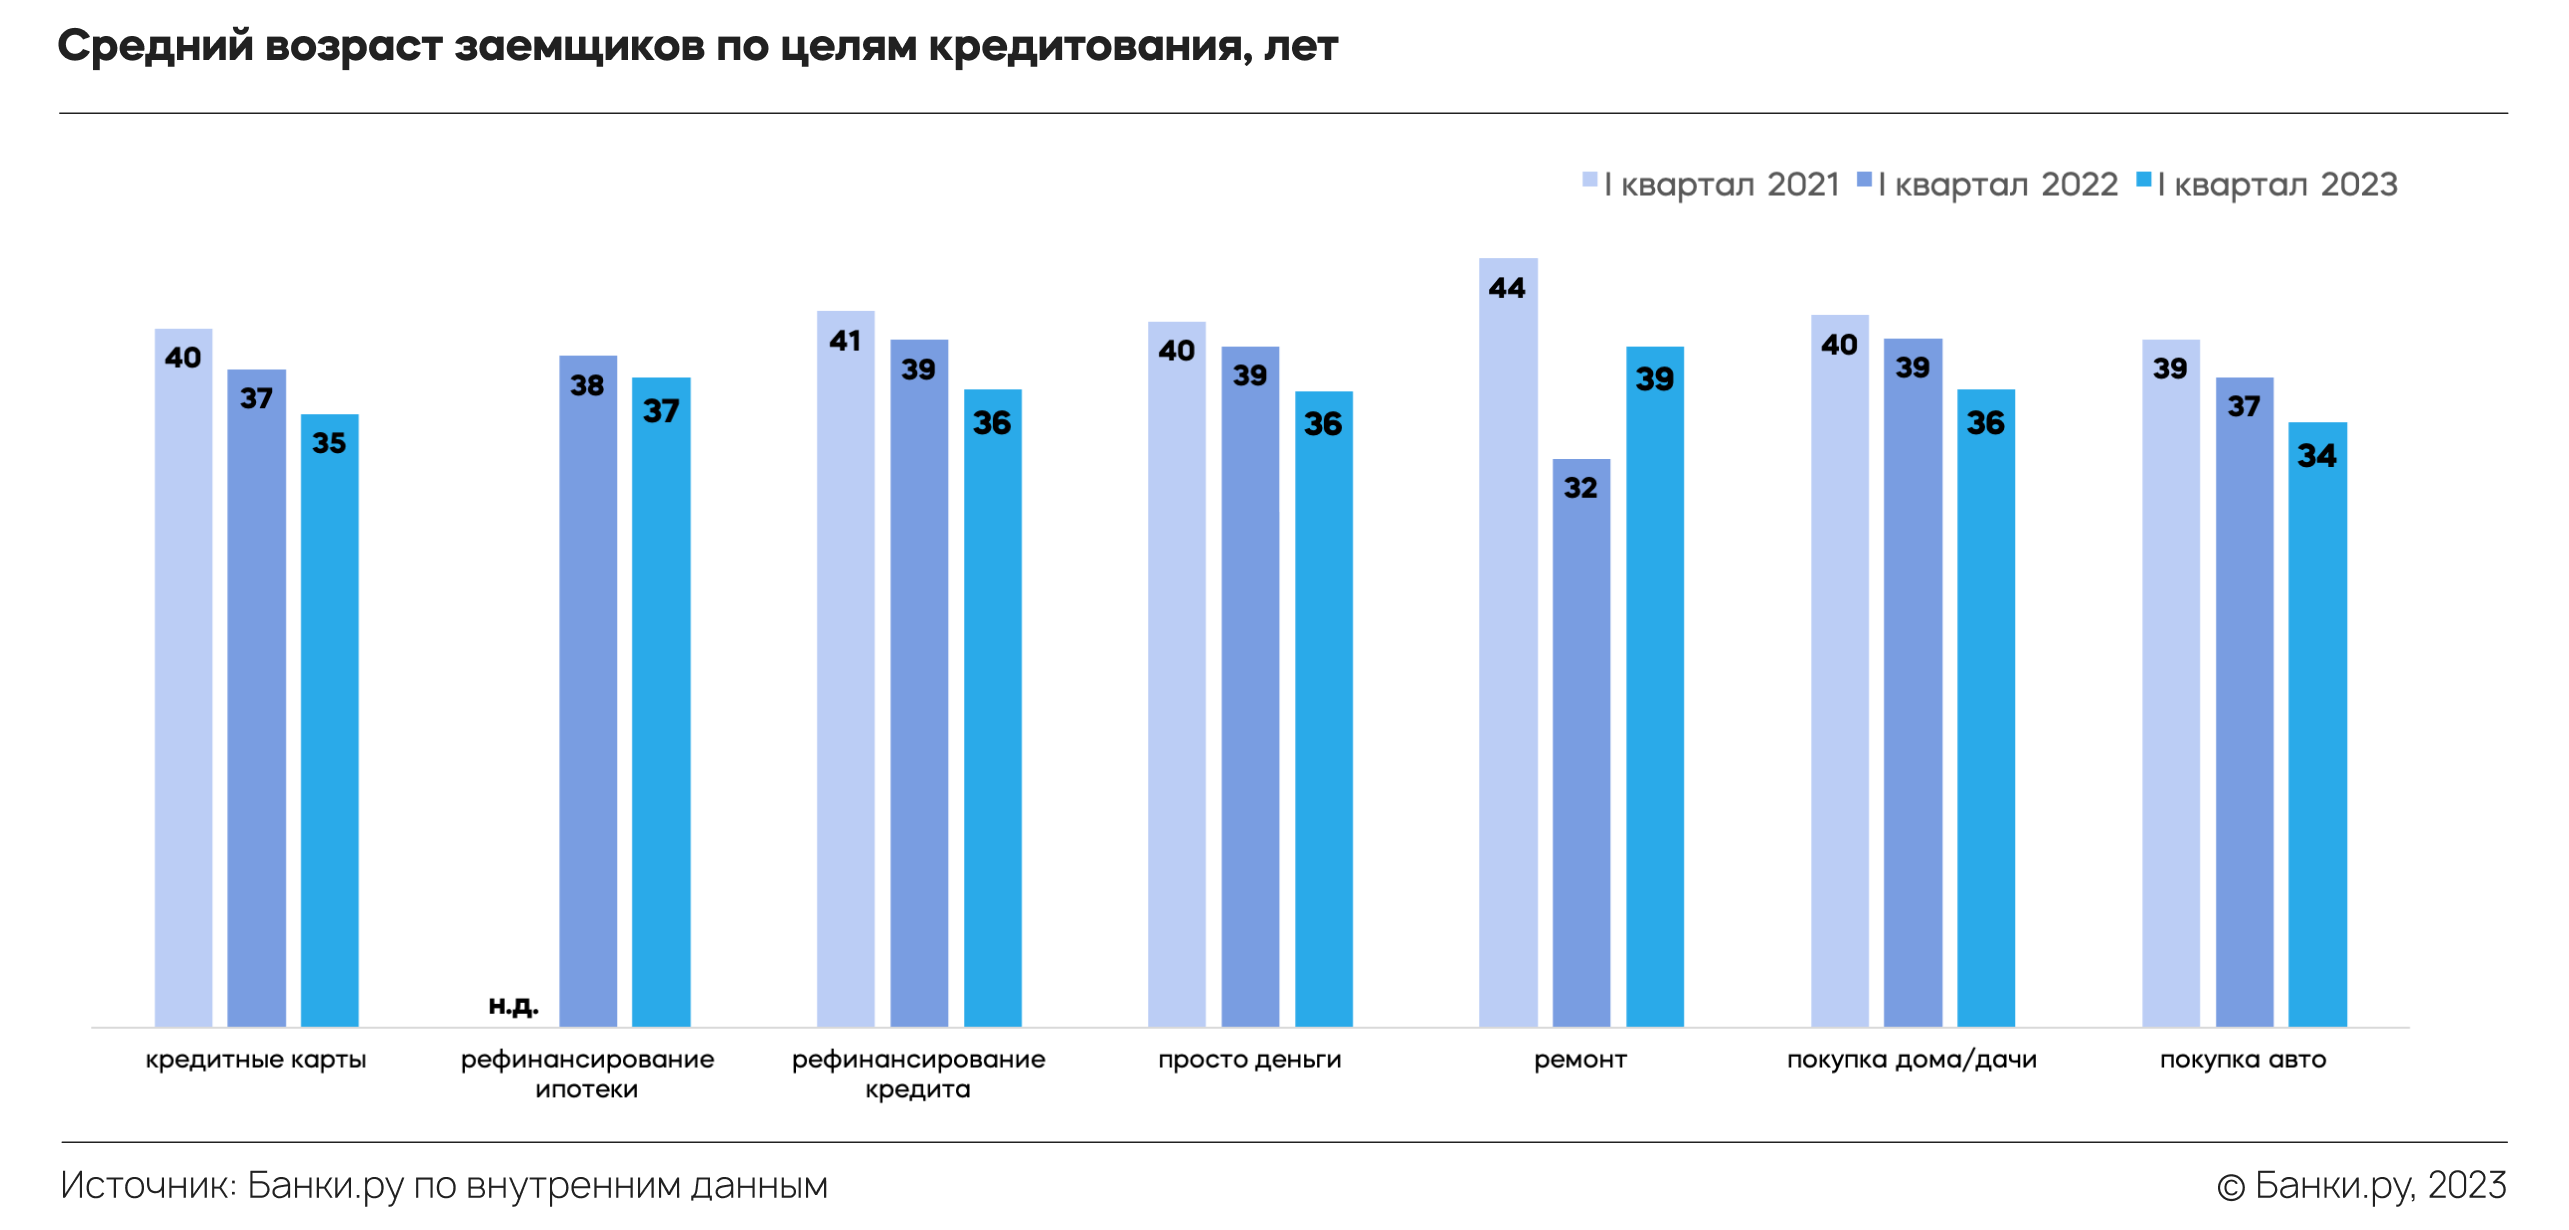 Займы 2023 форум. Розничное кредитование. Средняя пенсия в России в 2023. Динамика кредитования Альфа банка 2022 -2023. Средний балл ЕГЭ 2021 И 2022.